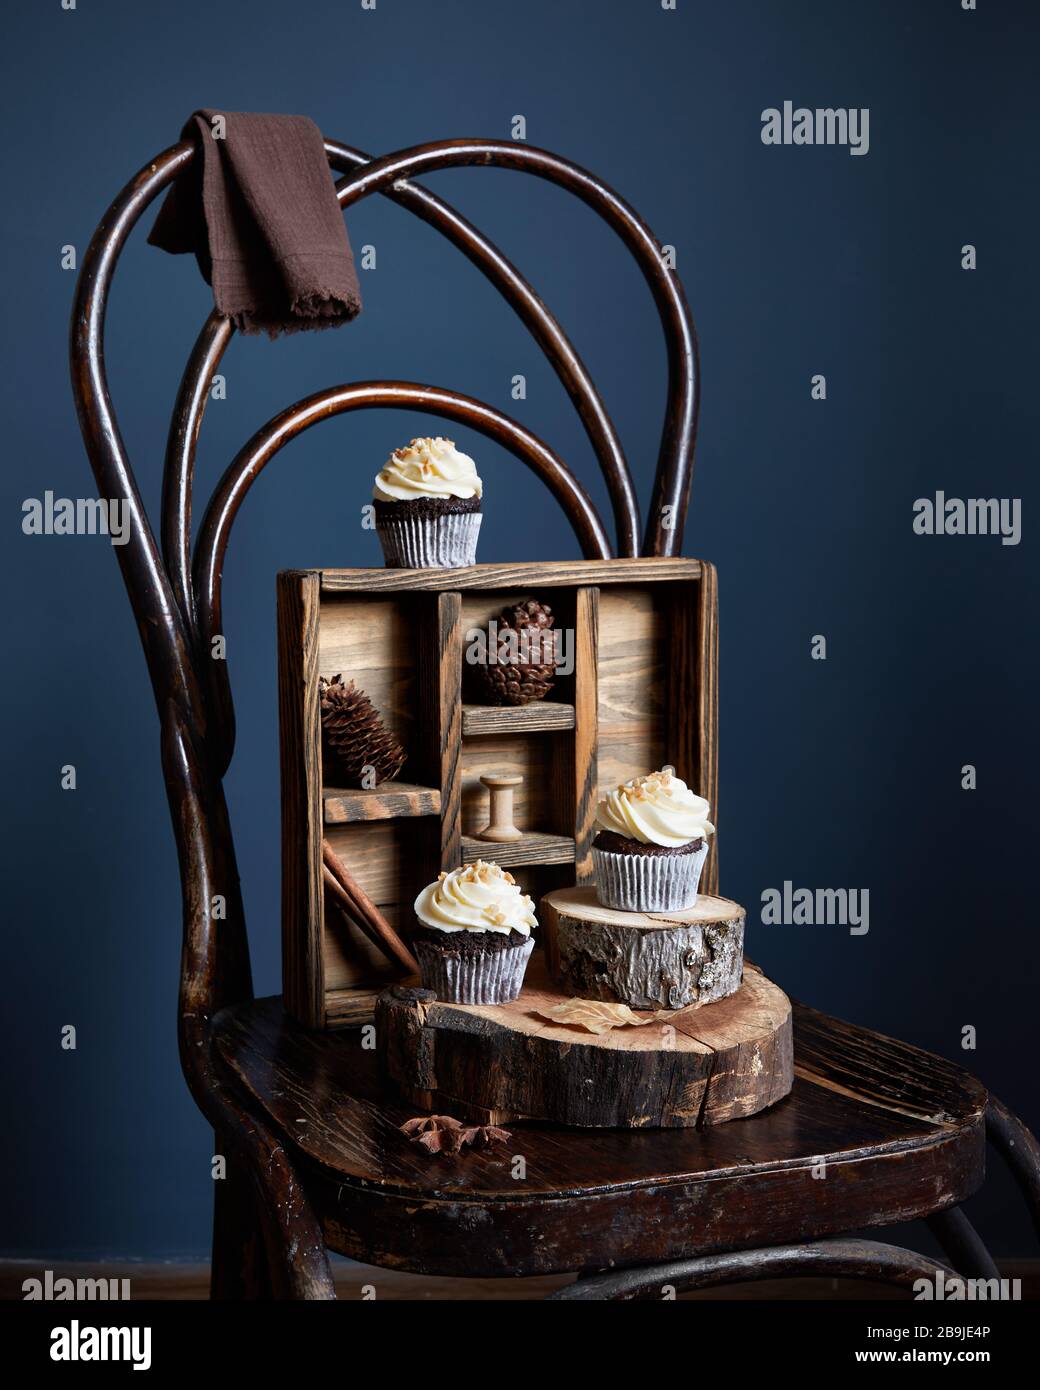 Cupcake al cioccolato decorati con crema di burro bianco e arachidi su vecchia sedia vintage su sfondo scuro. Spazio libero per il testo Foto Stock